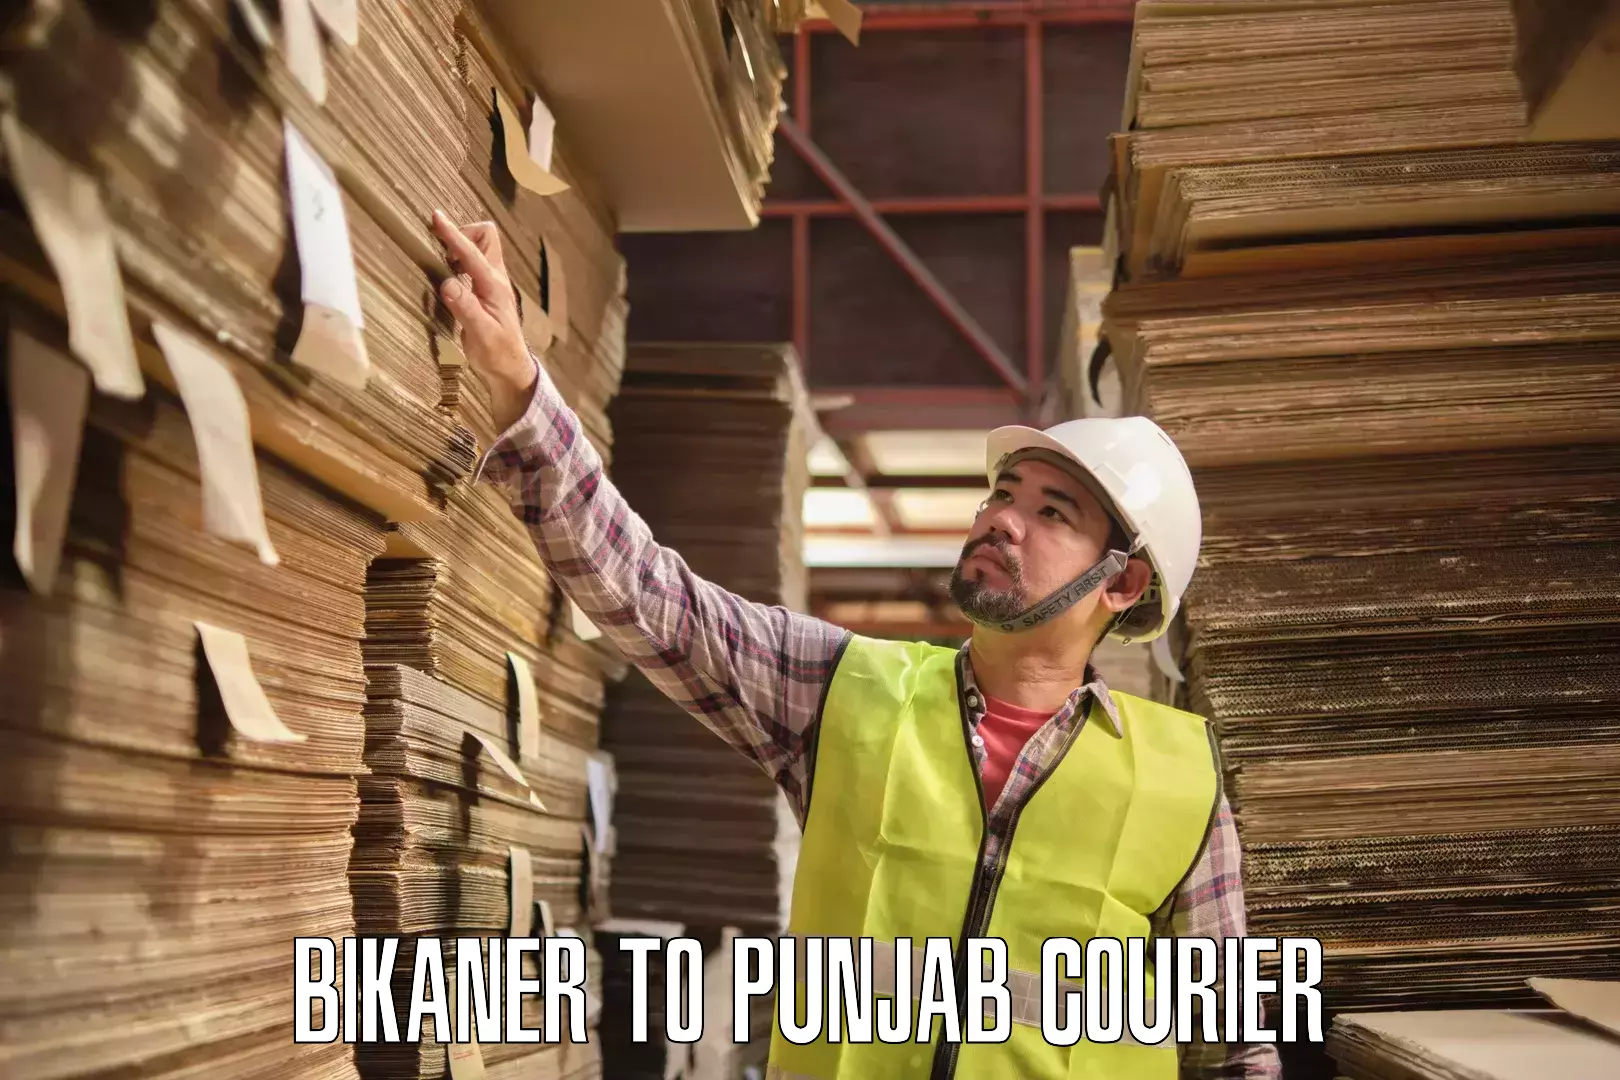 Individual parcel service Bikaner to Punjab